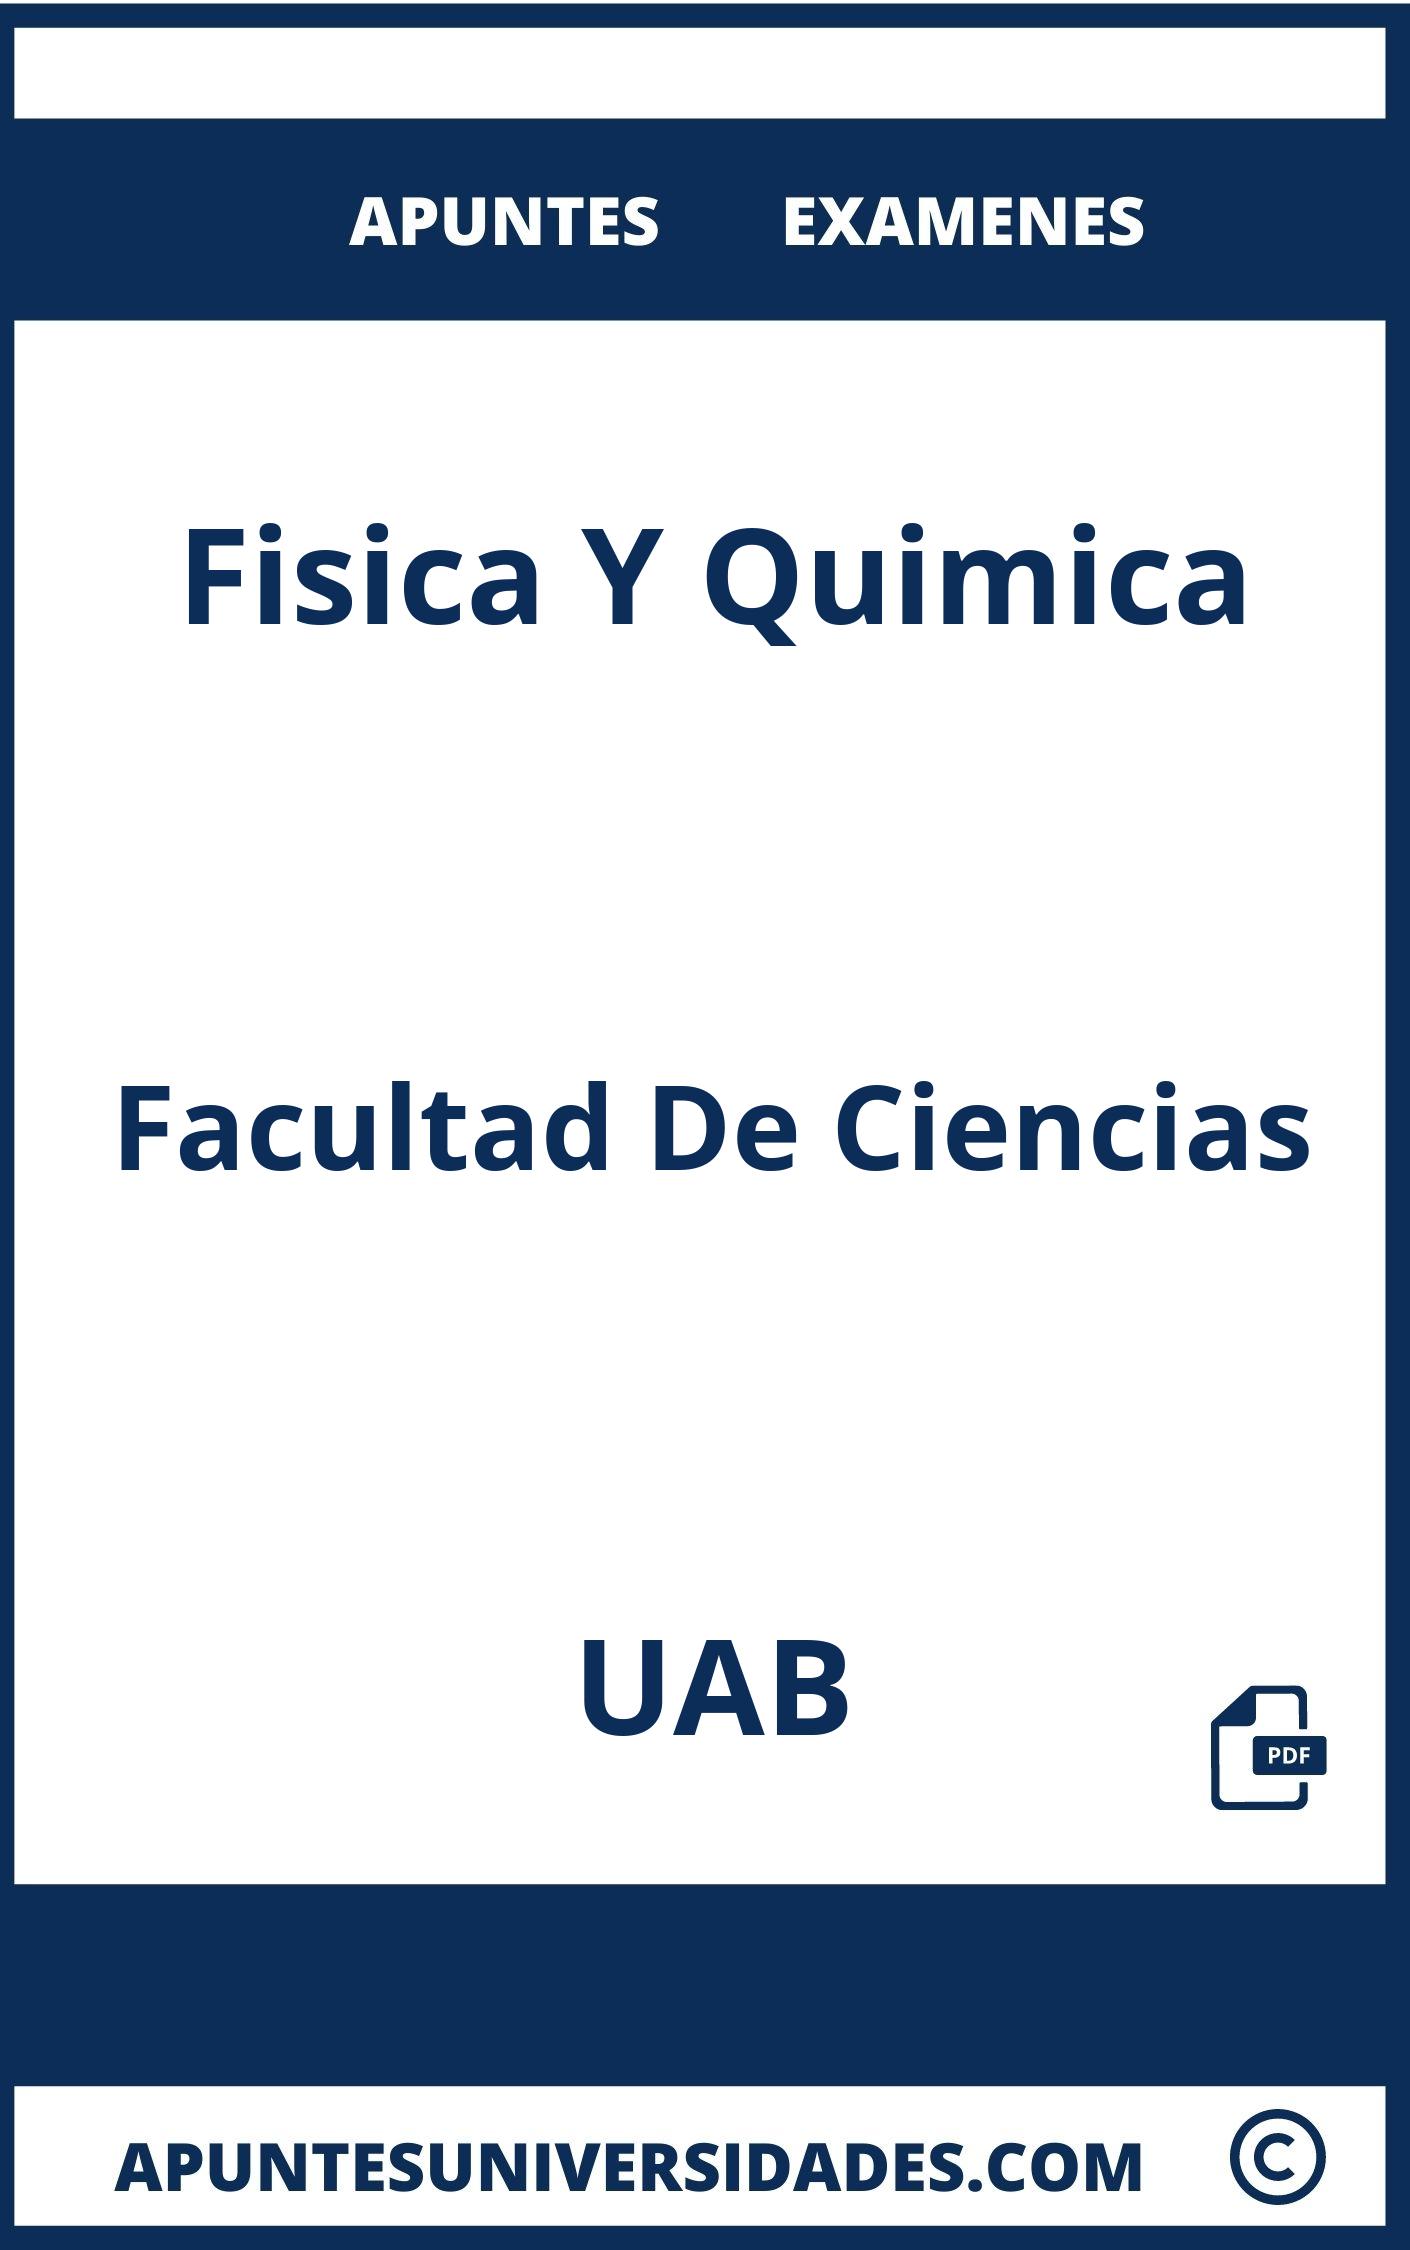 Apuntes y Examenes de Fisica Y Quimica UAB